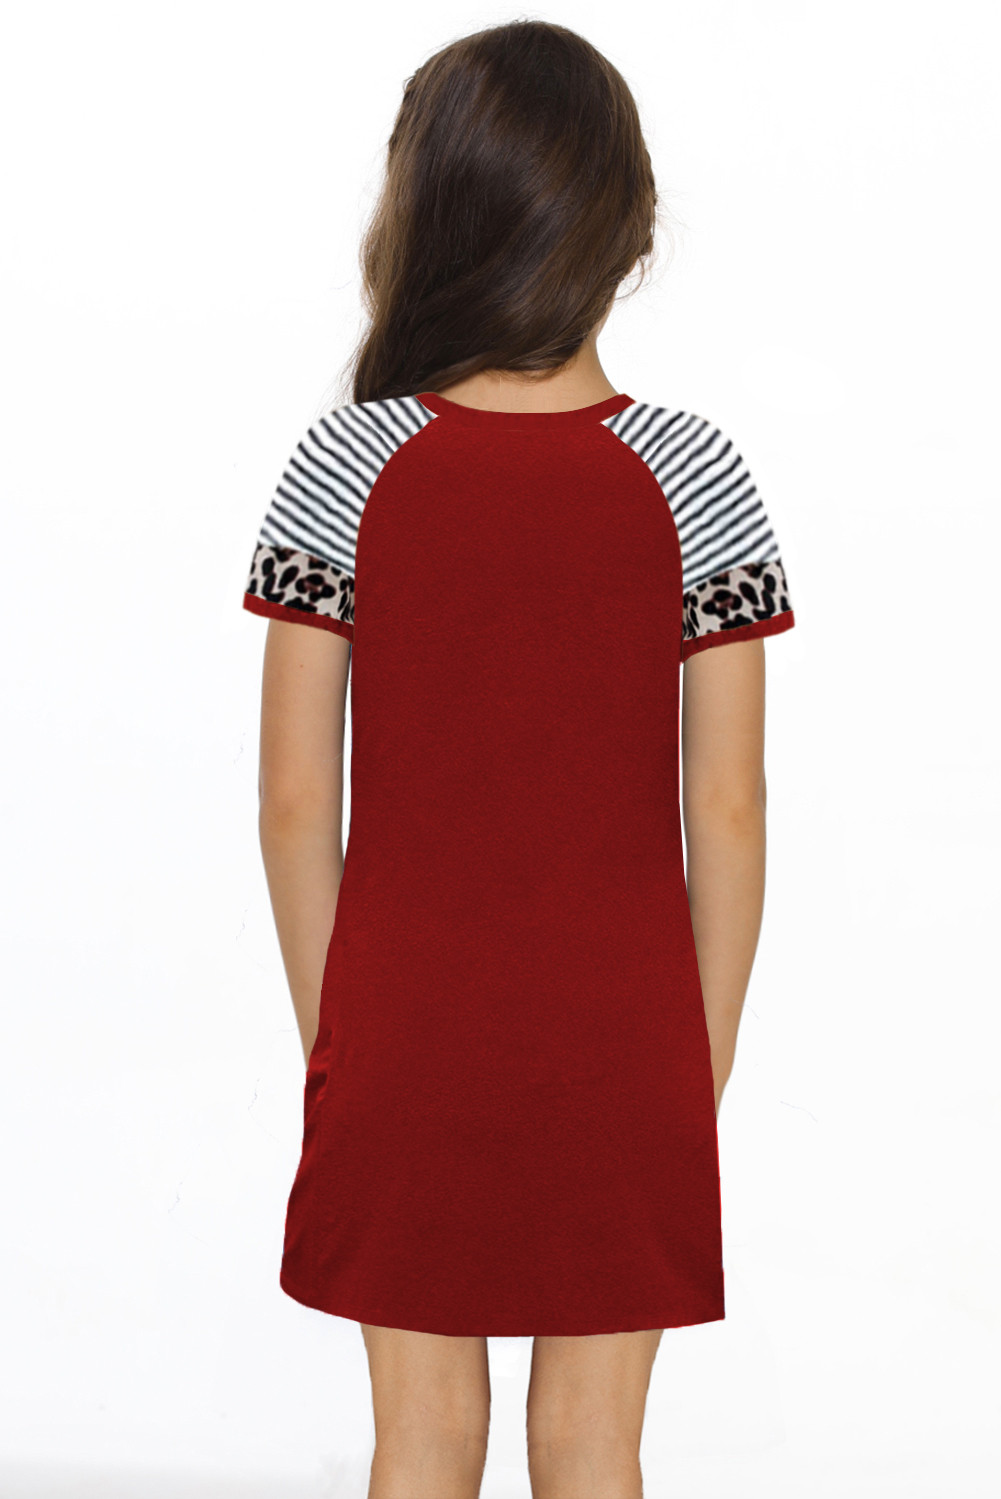 红色休闲时尚豹纹条纹短袖扭结可爱儿童连衣裙 TZ61235